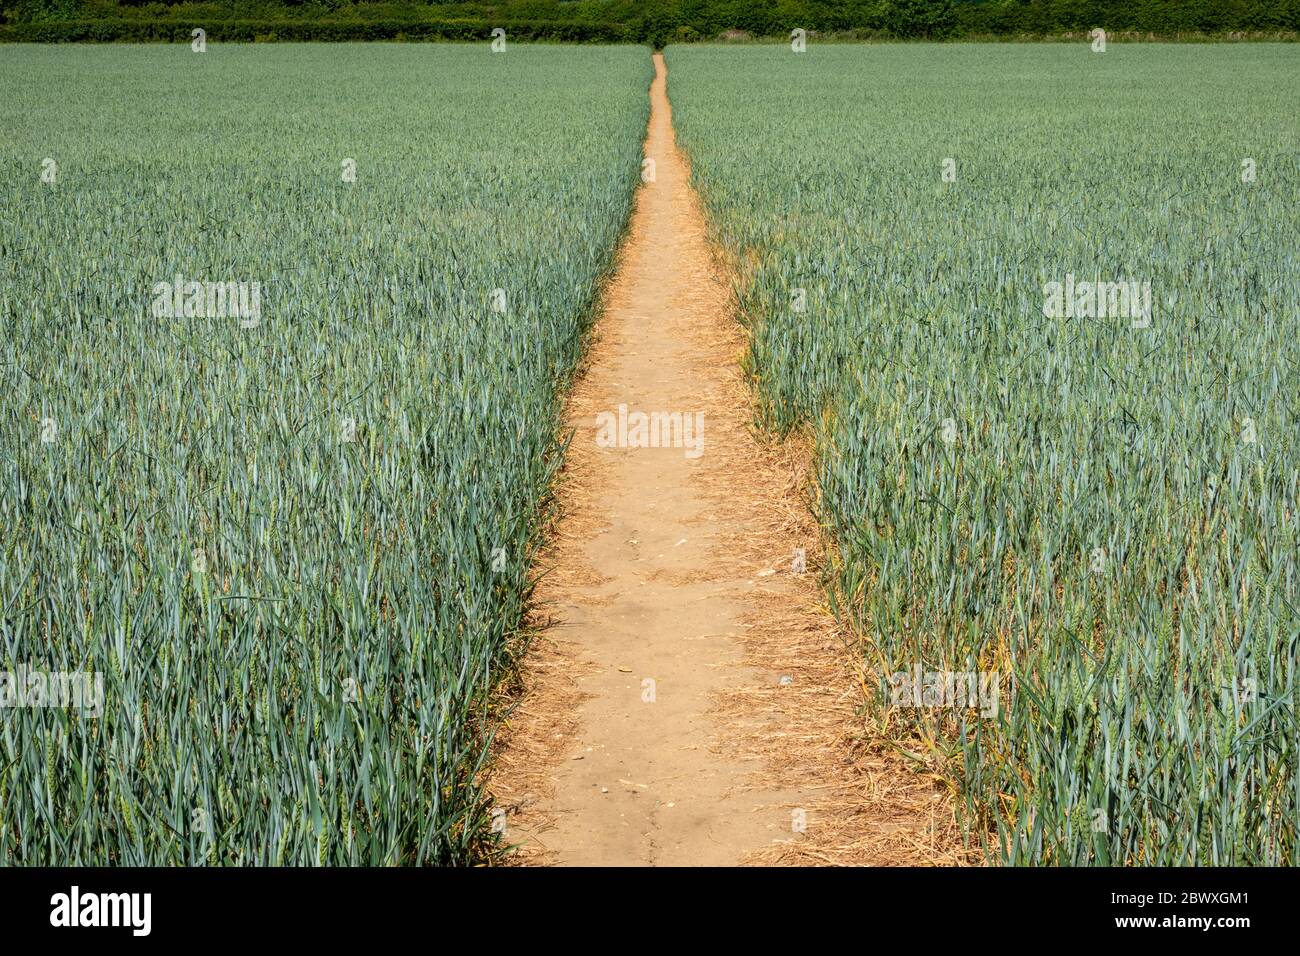 Ein klarer Schnittweg durch ein unreifes Weizenfeld, das das Filed in zwei Hälften teilt und einen Fluchtpunkt am baumgesäumten Horizont bildet Stockfoto